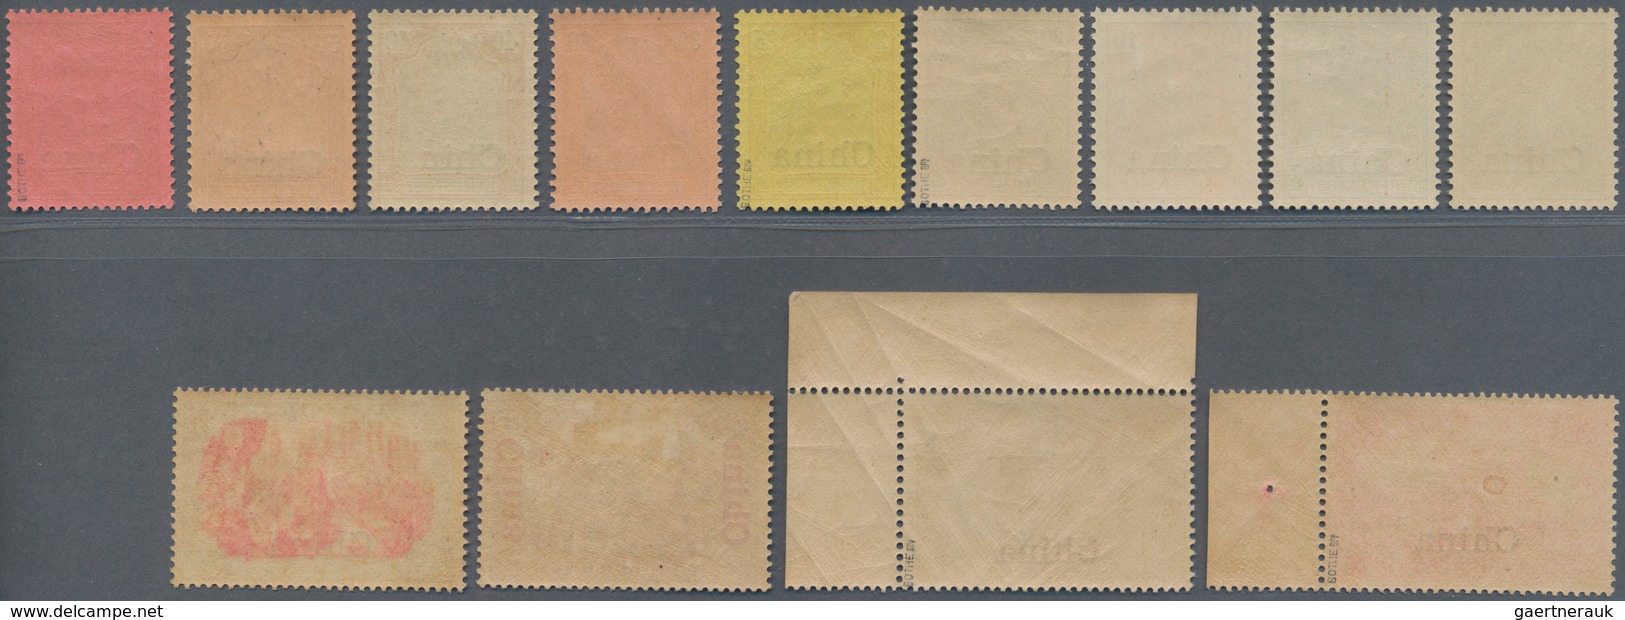 Deutsche Post In China: 1901, Germania Reichspost, 3 Pfg. Bis 5 Mark, Komplette Serie Von 13 Werten, - China (kantoren)